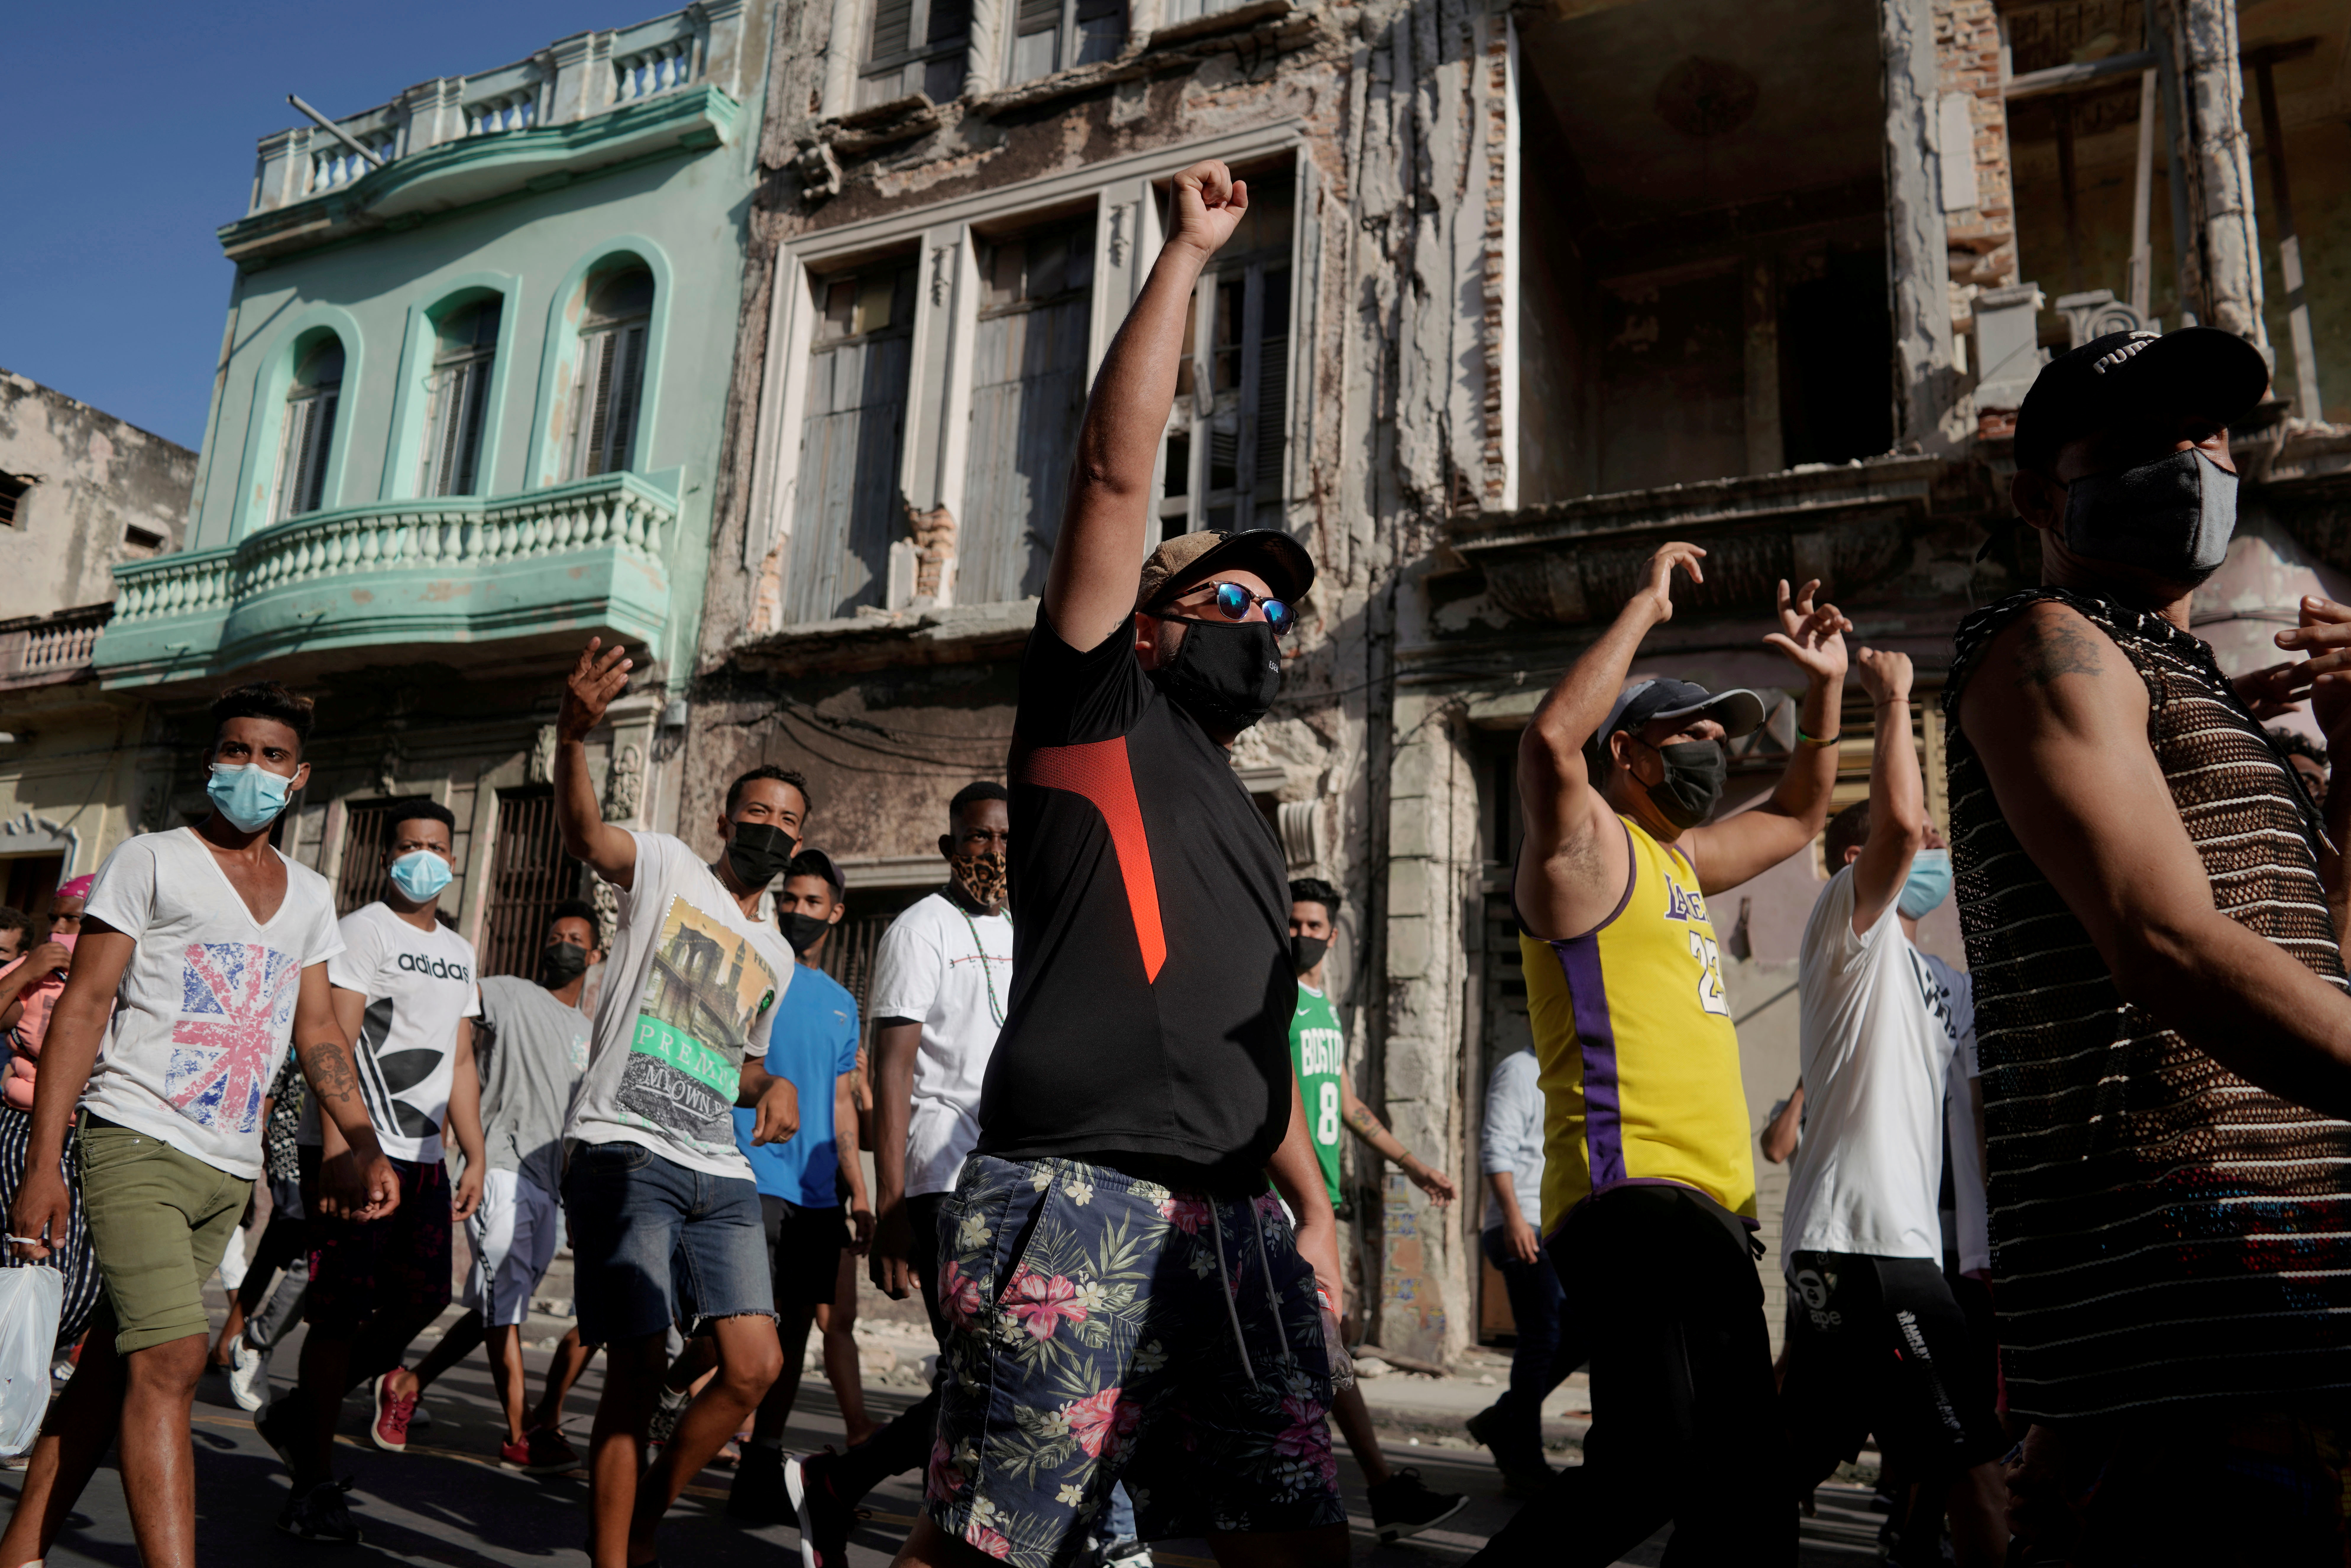 Manifestantes gritan consignas contra el régimen durante una manifestación en La Habana, Cuba, el 11 de julio de 2021. (REUTERS/Alexandre Meneghin/File Photo)